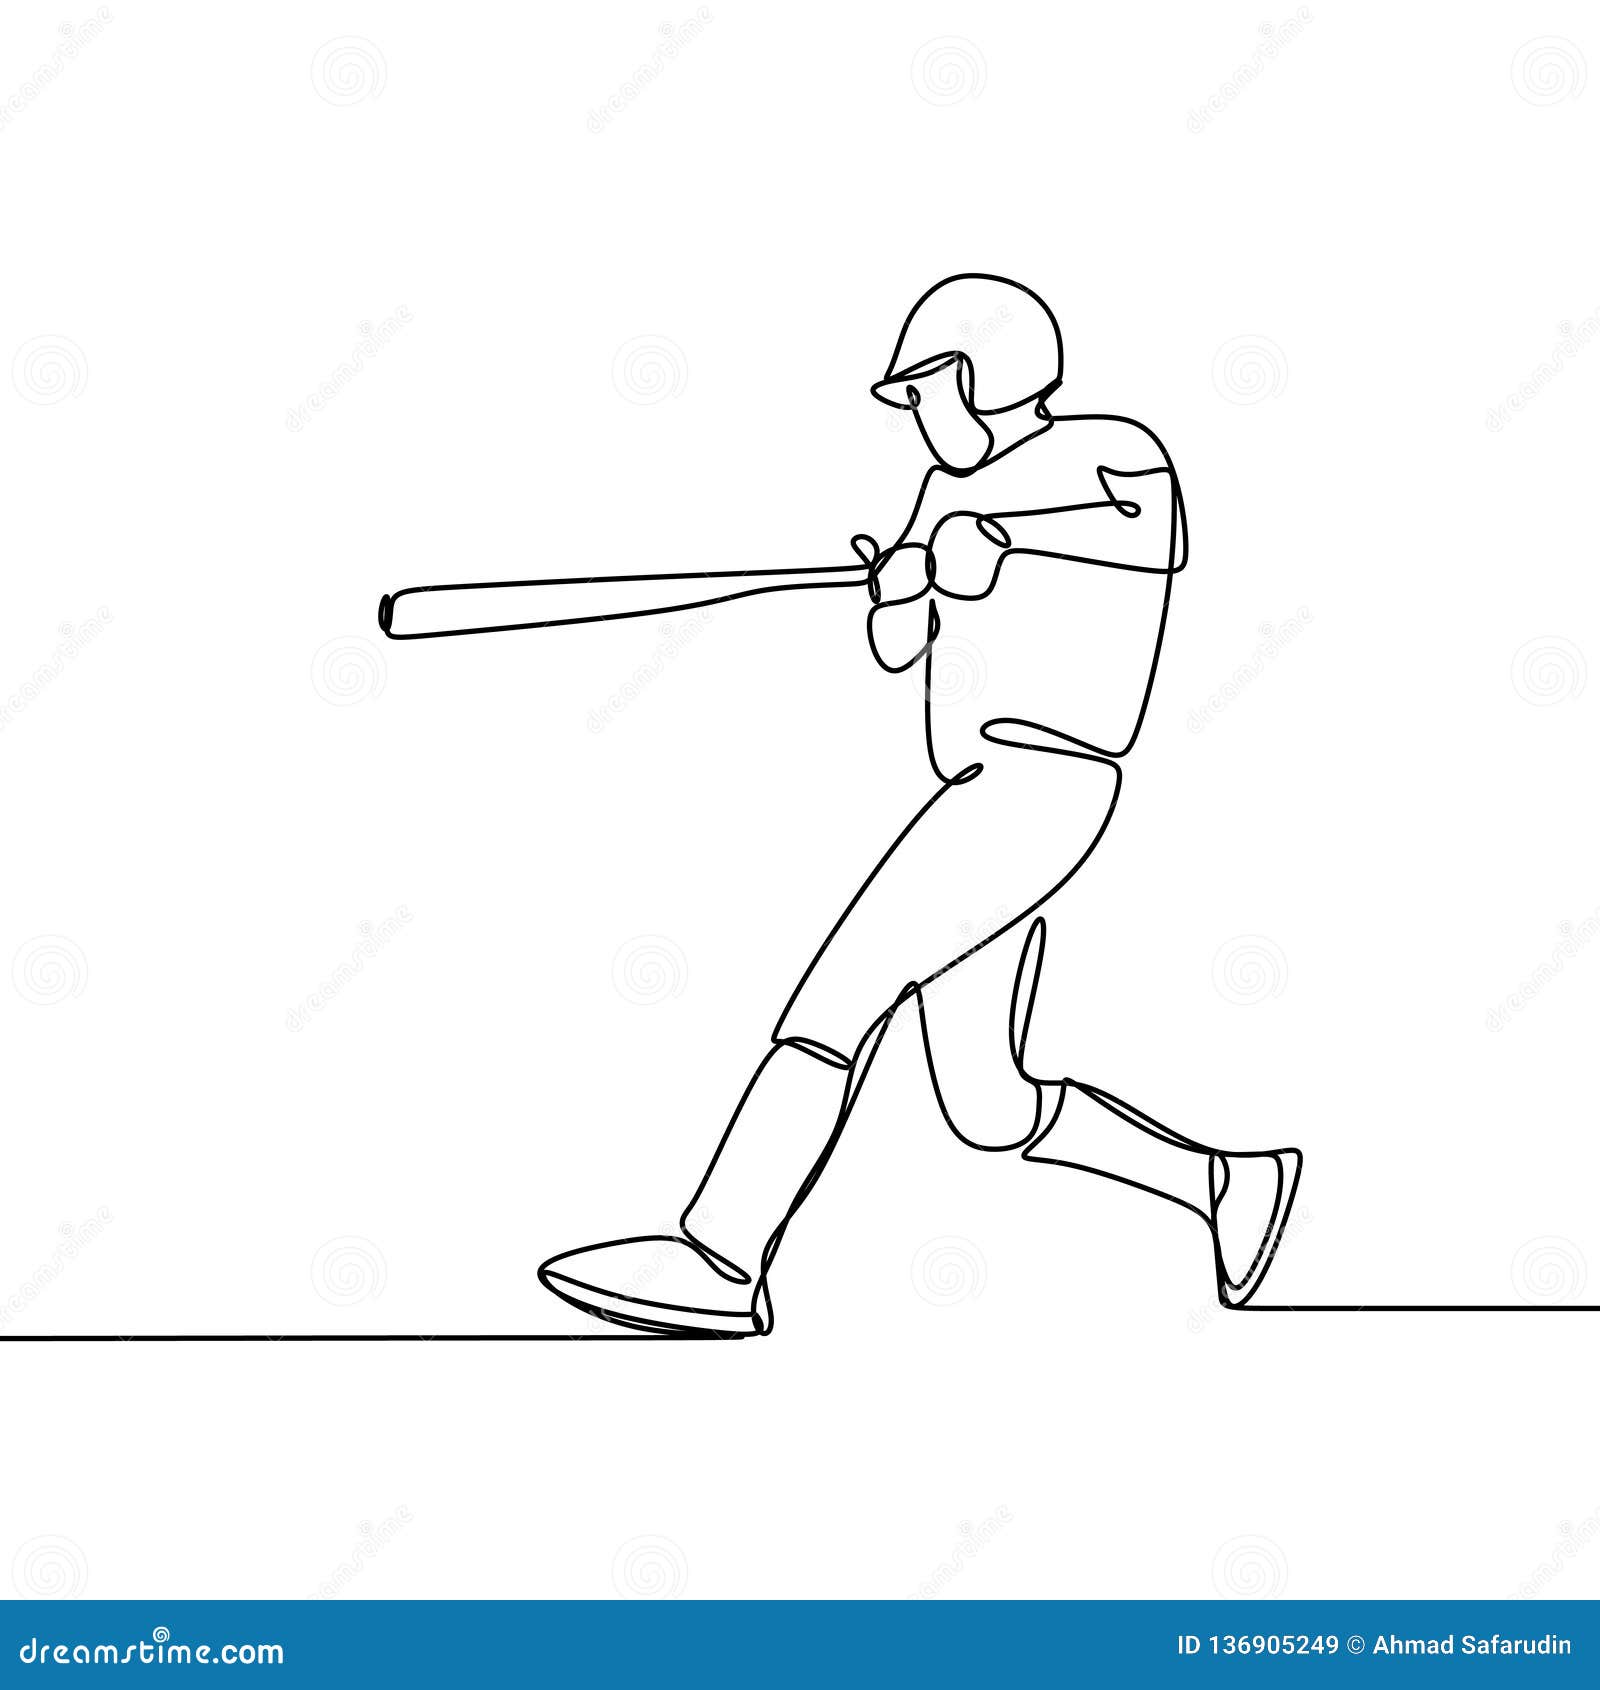 drawing baseball pitcher pose